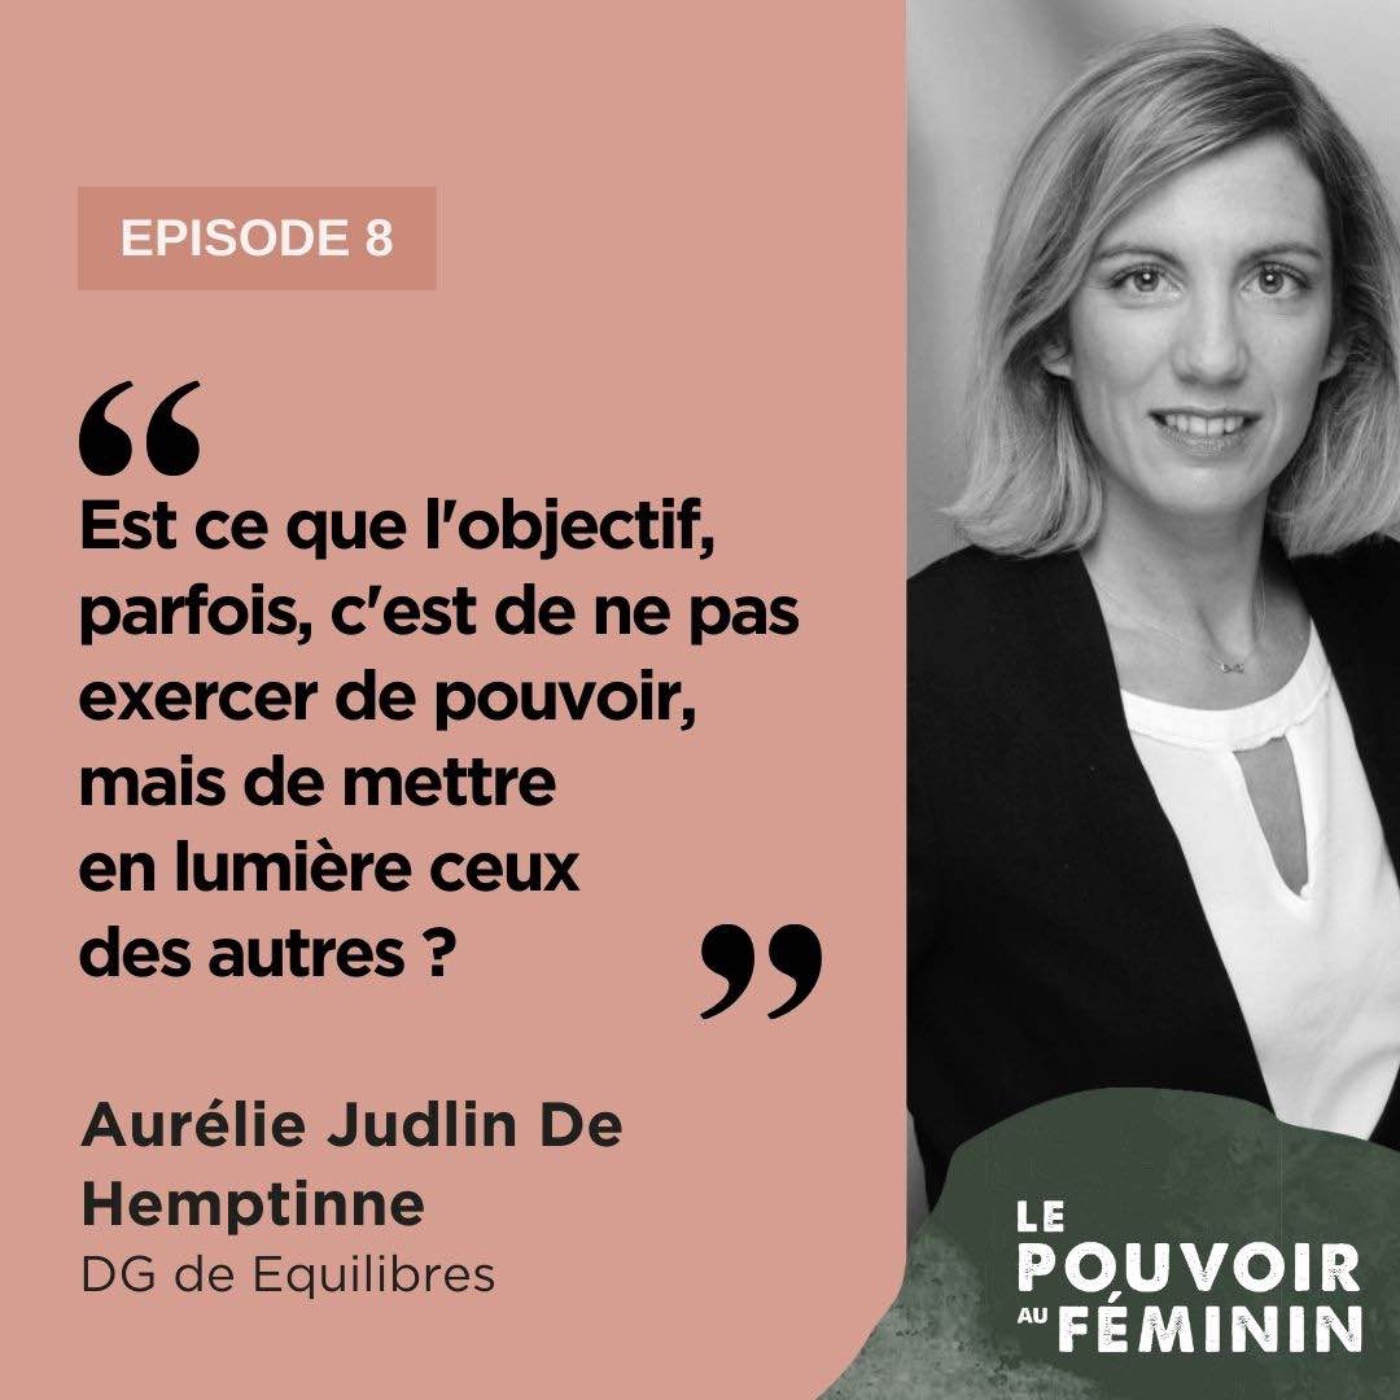 Aurélie Judlin De Hemptinne, DG de Equilibres - "Est ce que l'objectif, parfois, c'est de ne pas exercer de pouvoir, mais de mettre en lumière ceux des autres ?"